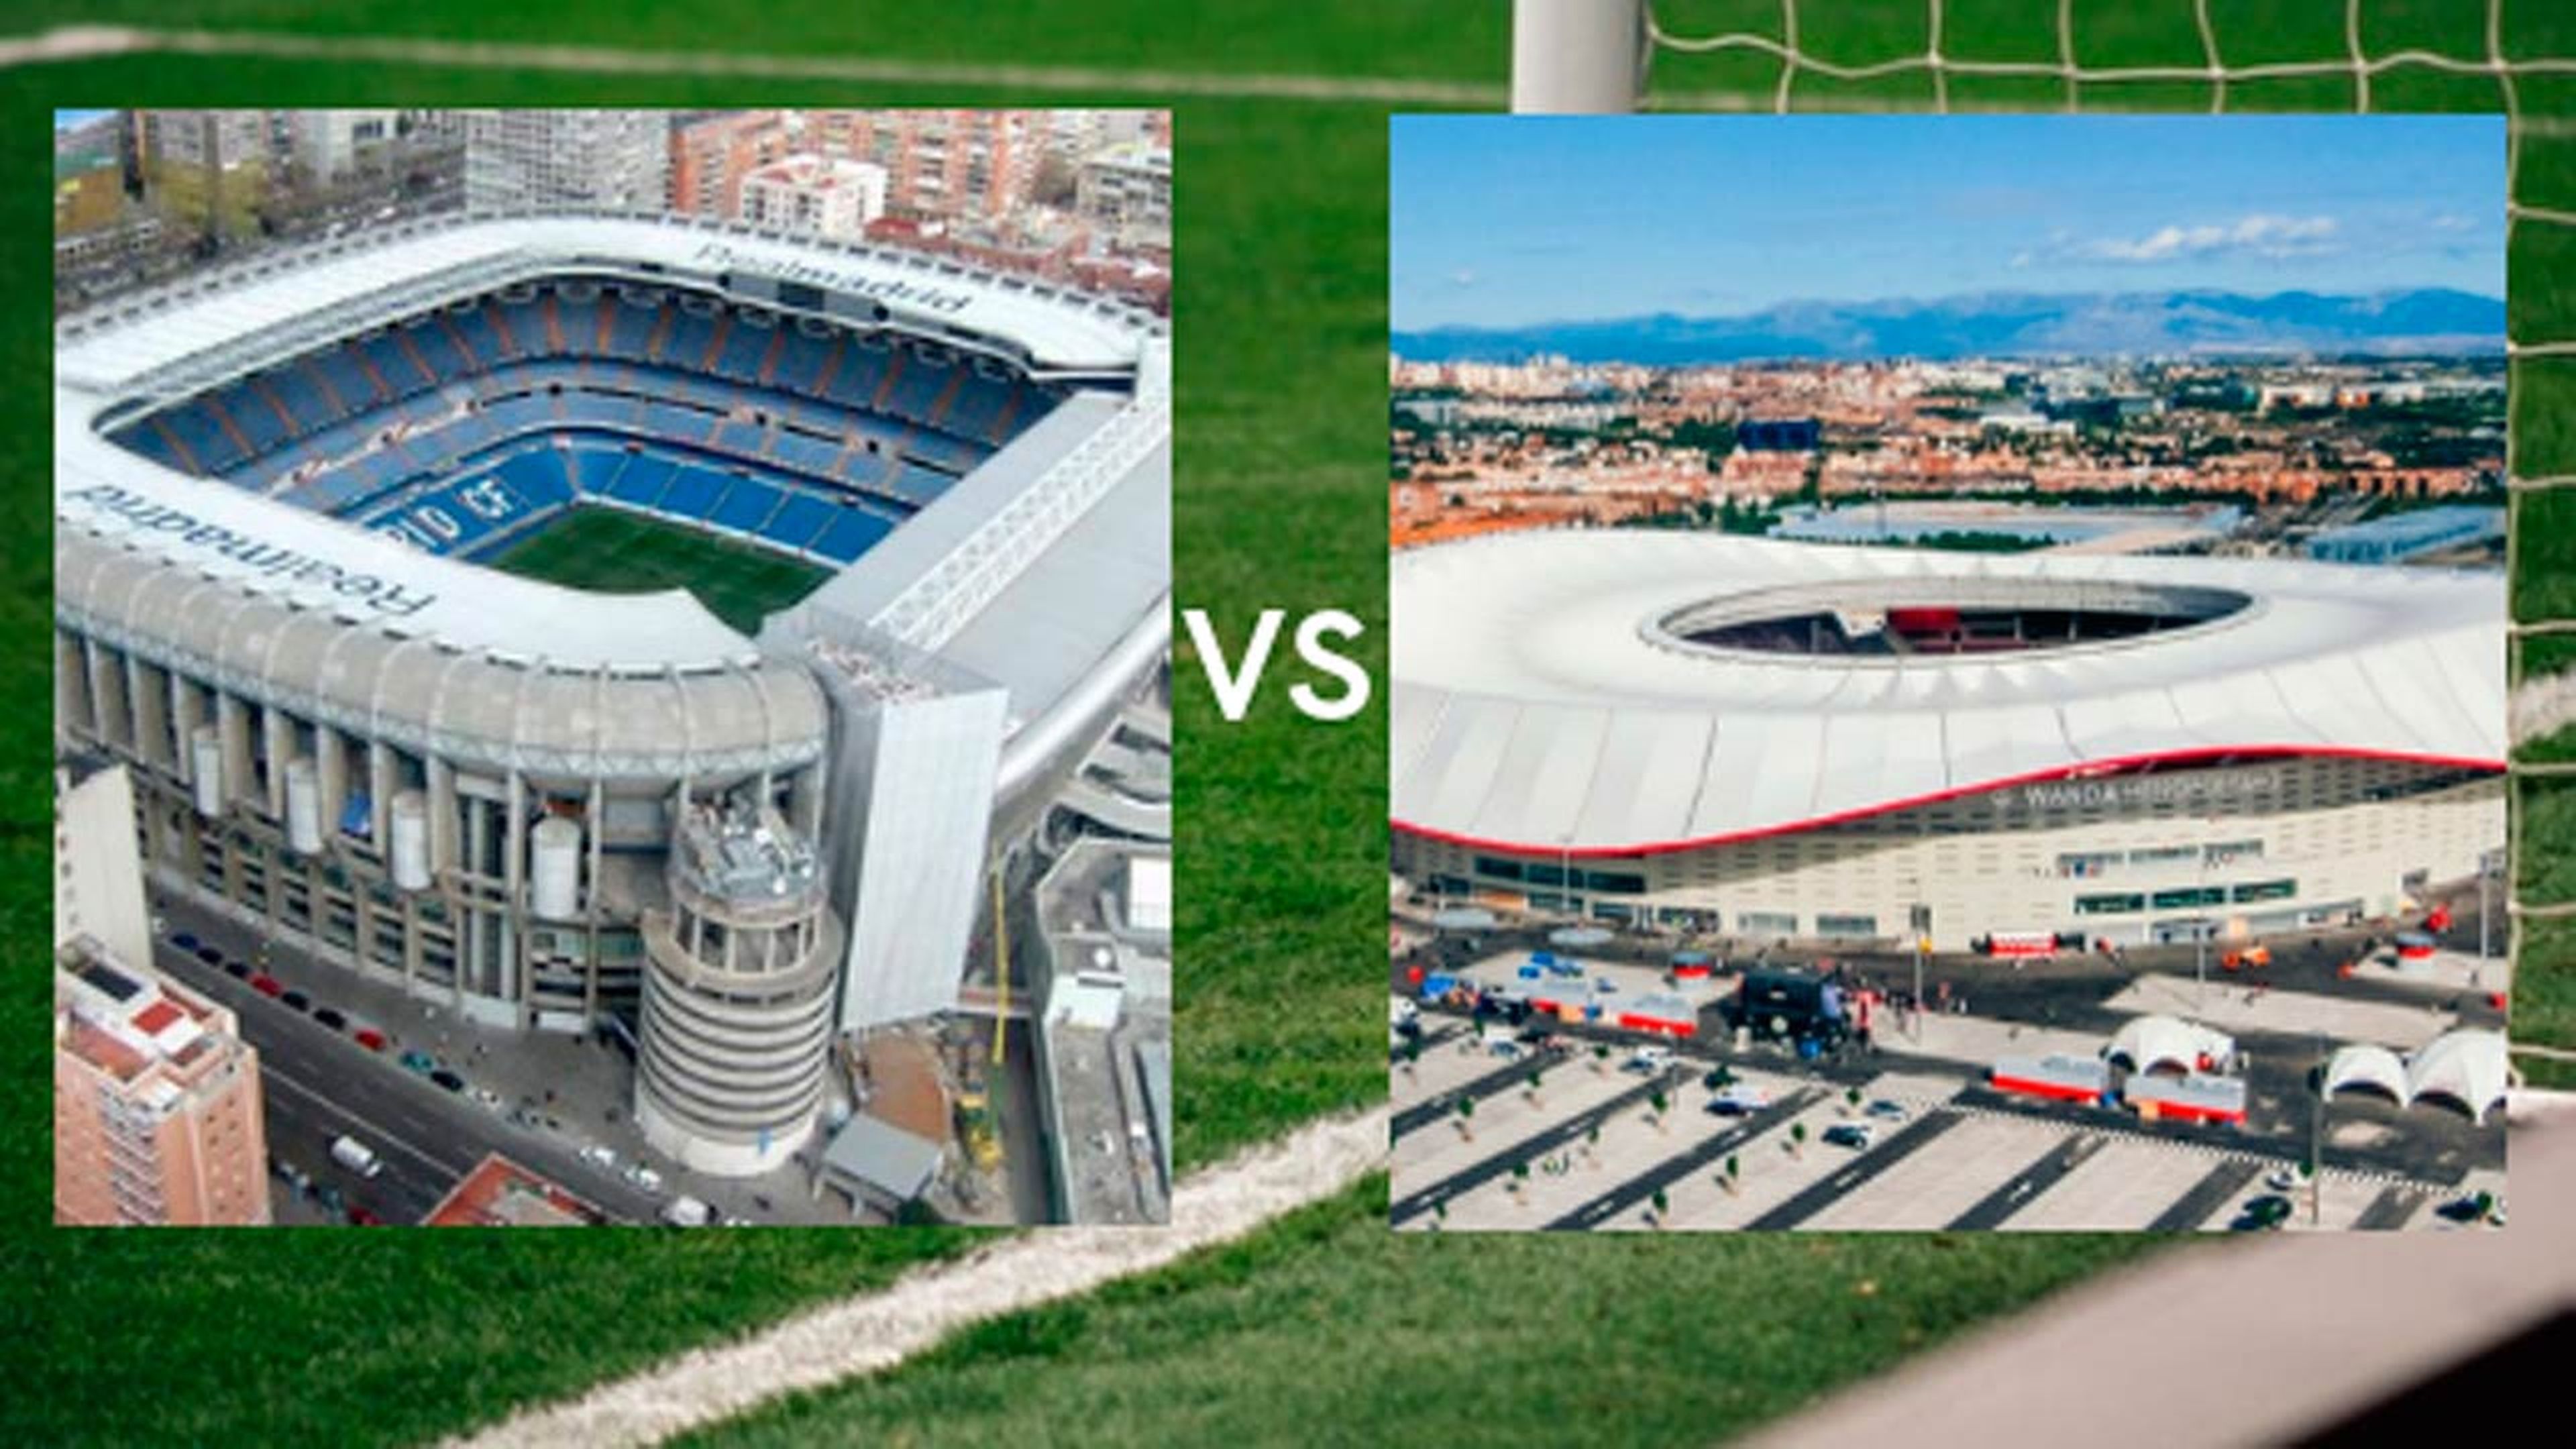 Wanda vs Bernabéu